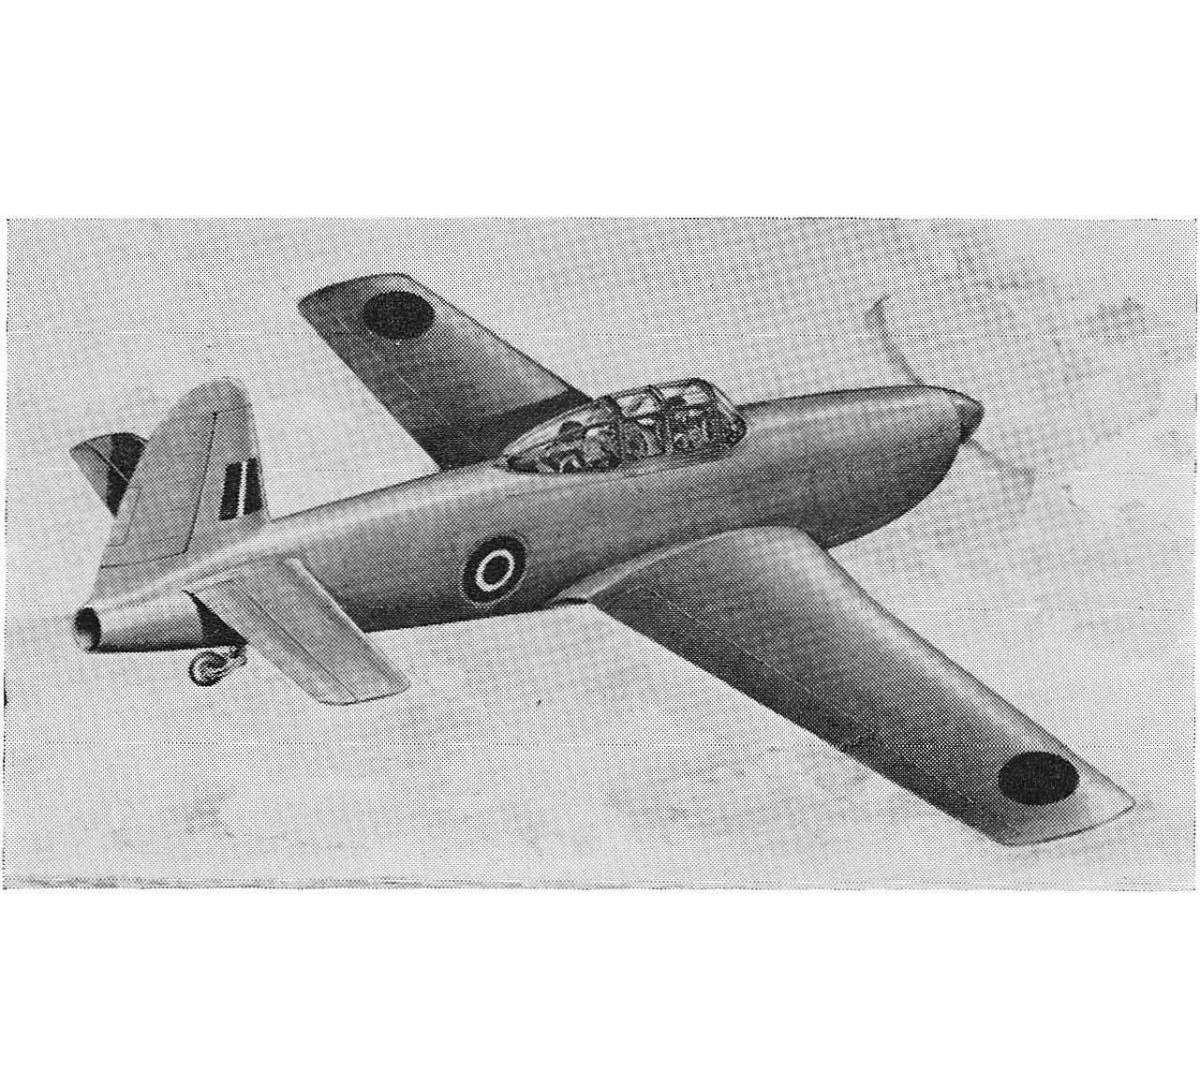 Проект экспериментального самолета Miles M.46. Великобритания